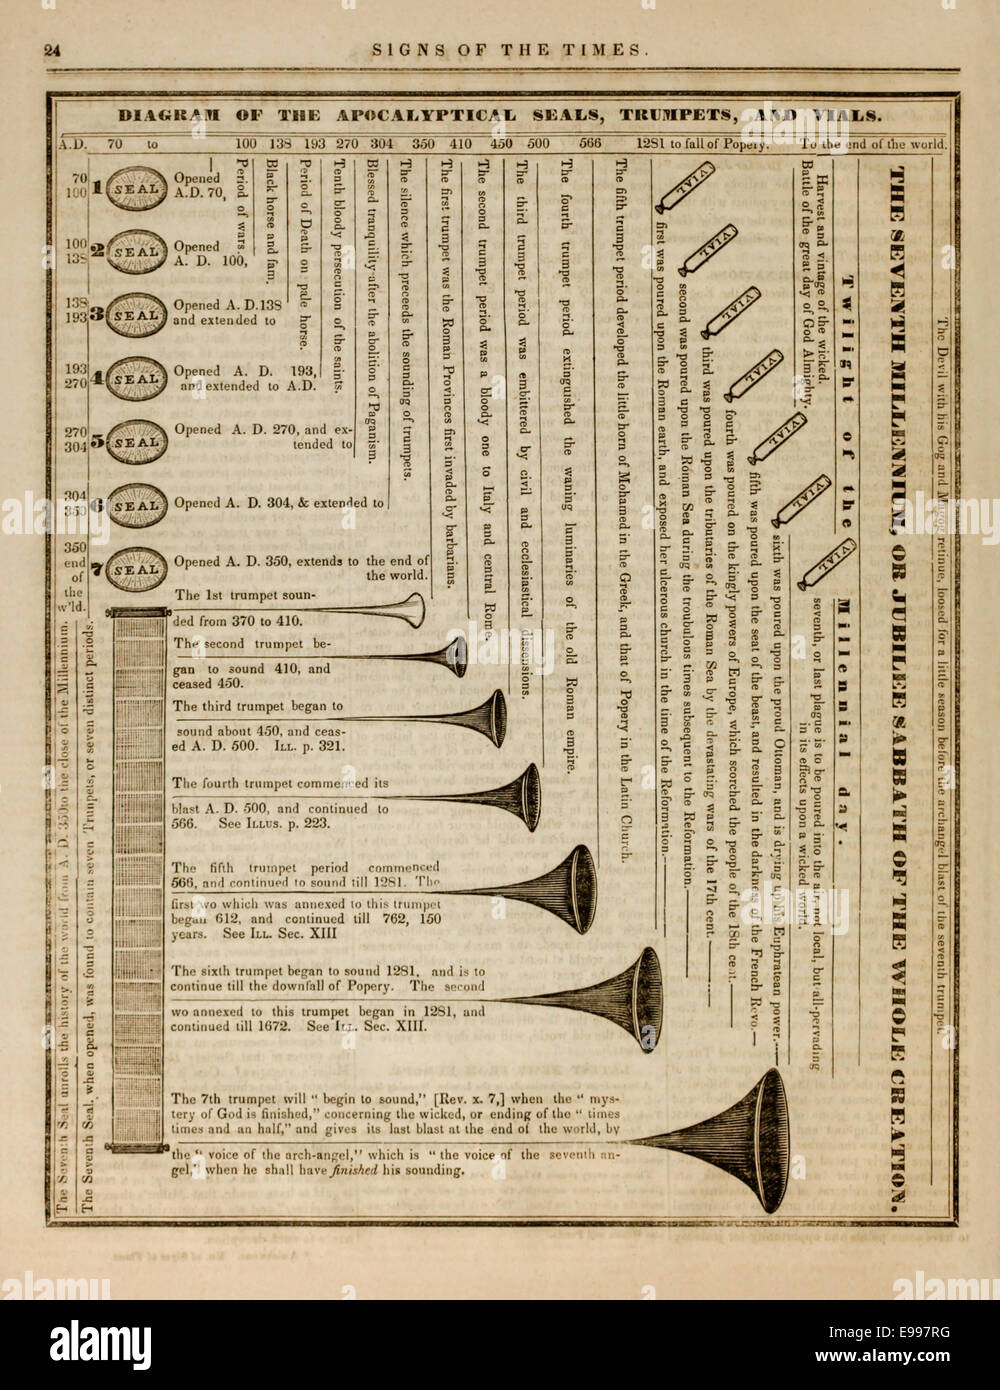 Grafik aus der 3. Auflage des "Zeichen der Zeit" monatliche Zeitschrift  1840 von Milleriten veröffentlicht. Siehe Beschreibung für mehr Info  Stockfotografie - Alamy